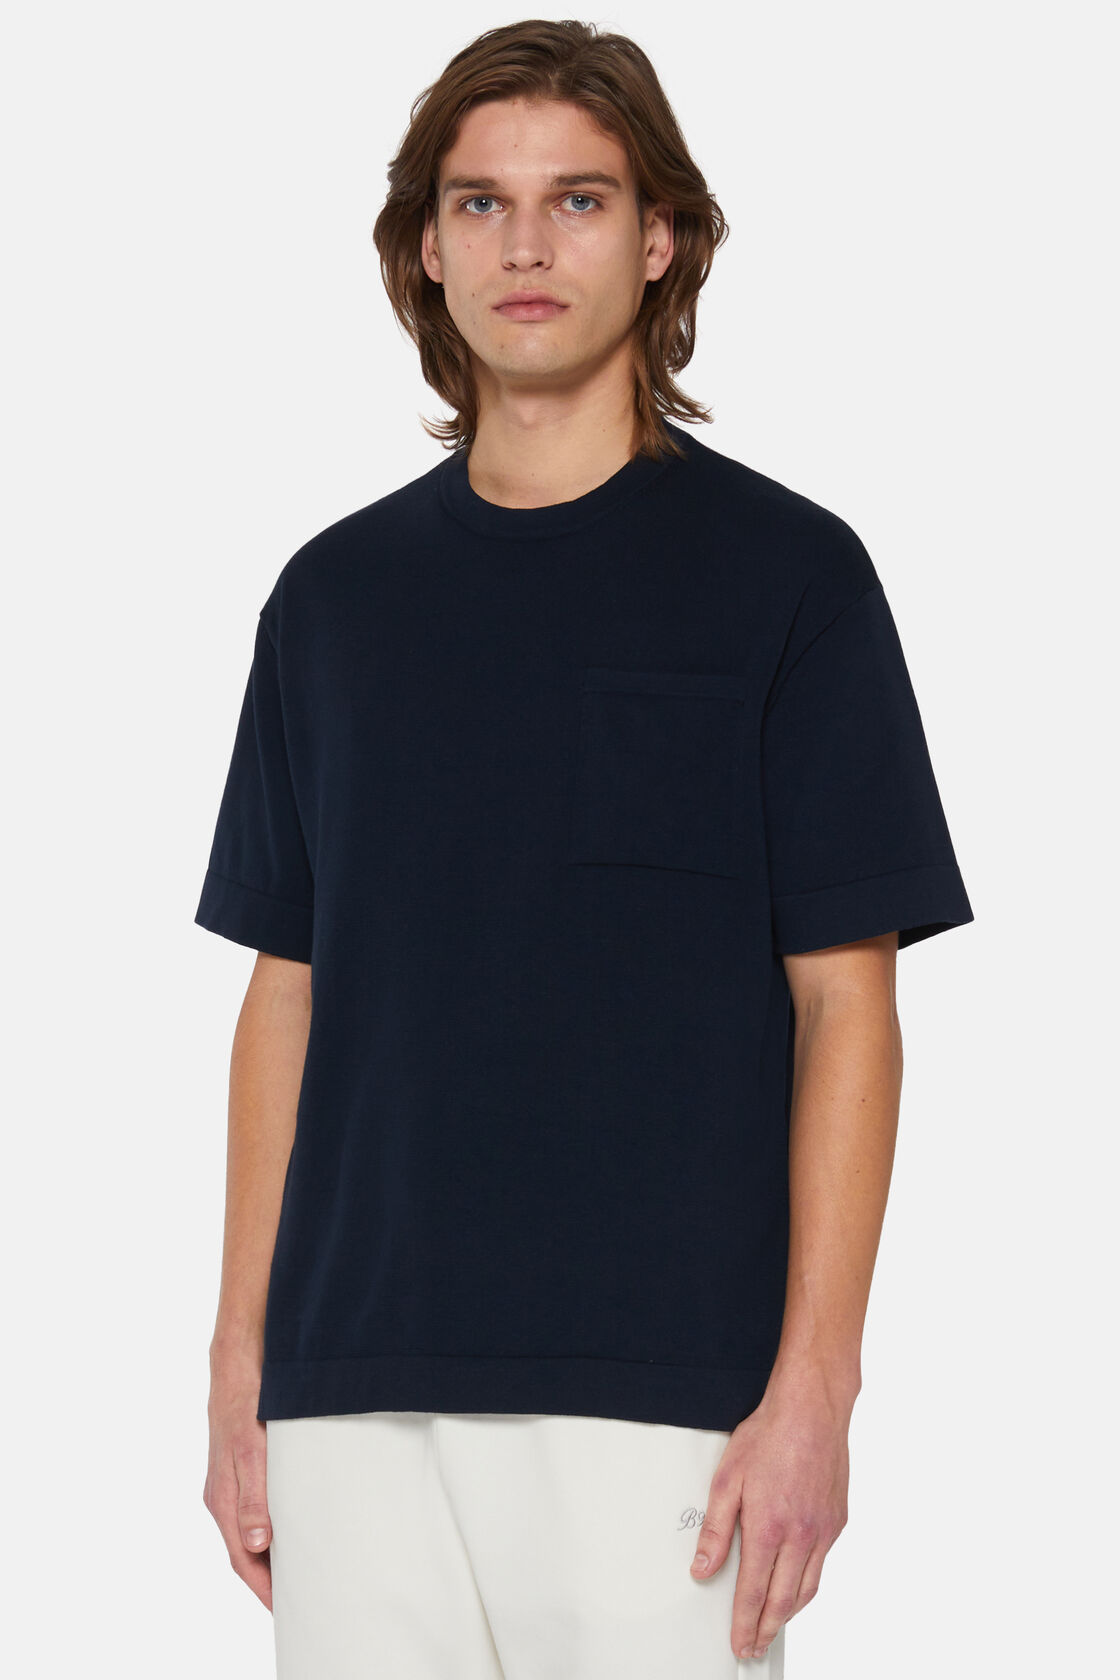 T-shirt de malha de algodão pima azul-marinho, Navy blue, hi-res